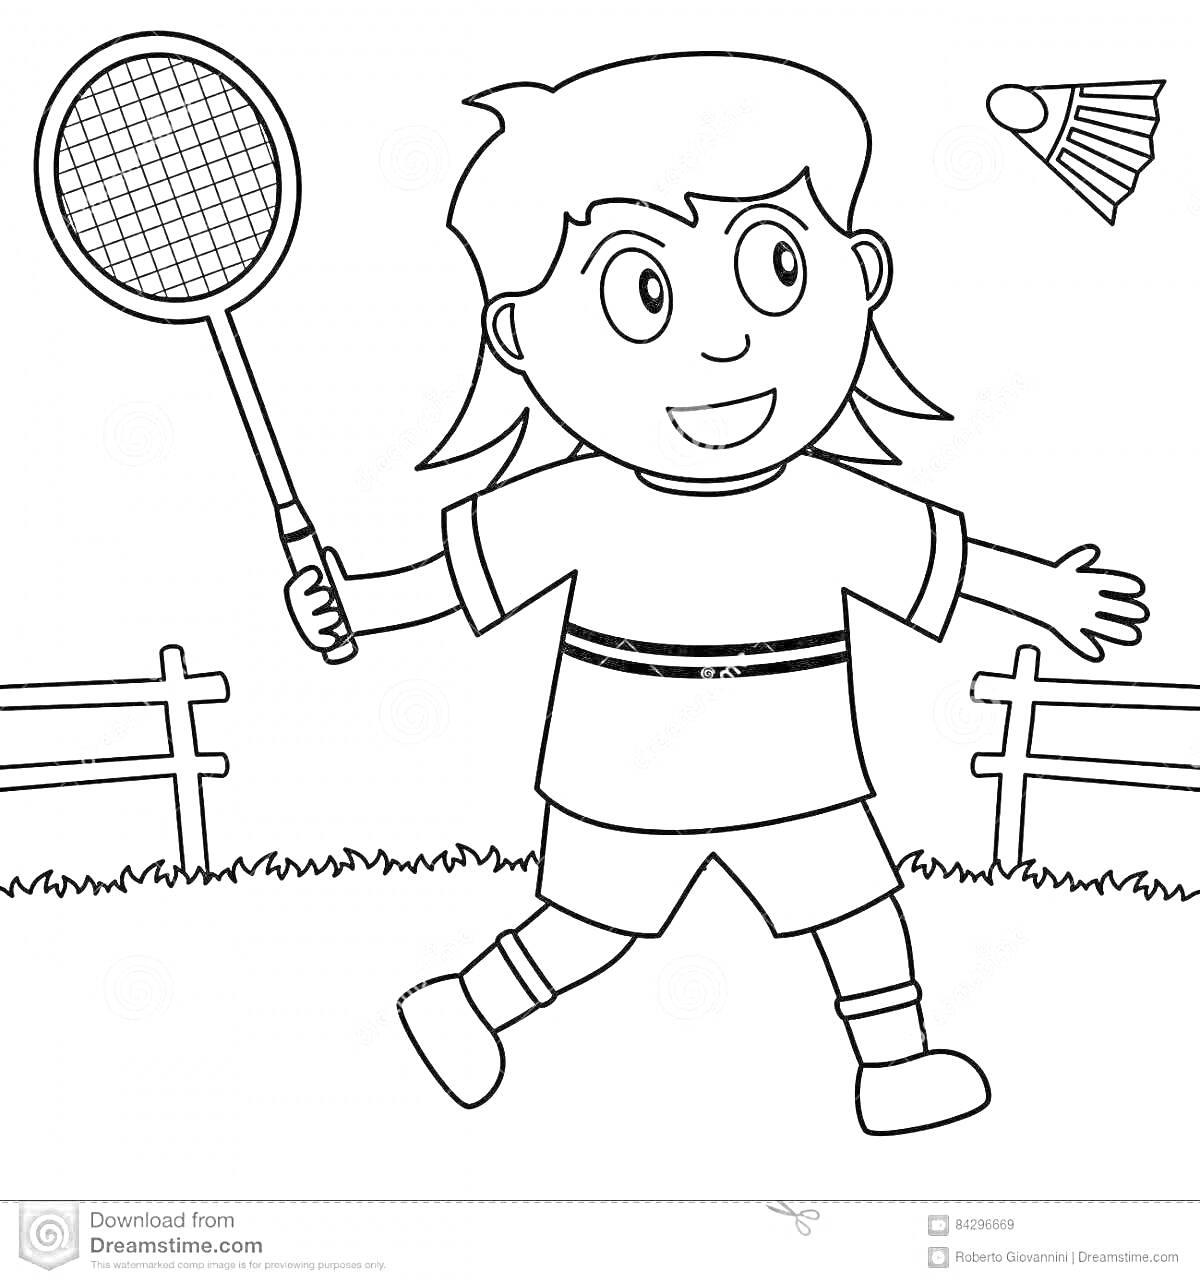 Раскраска Ребёнок с ракеткой и воланом на лужайке с ограждением